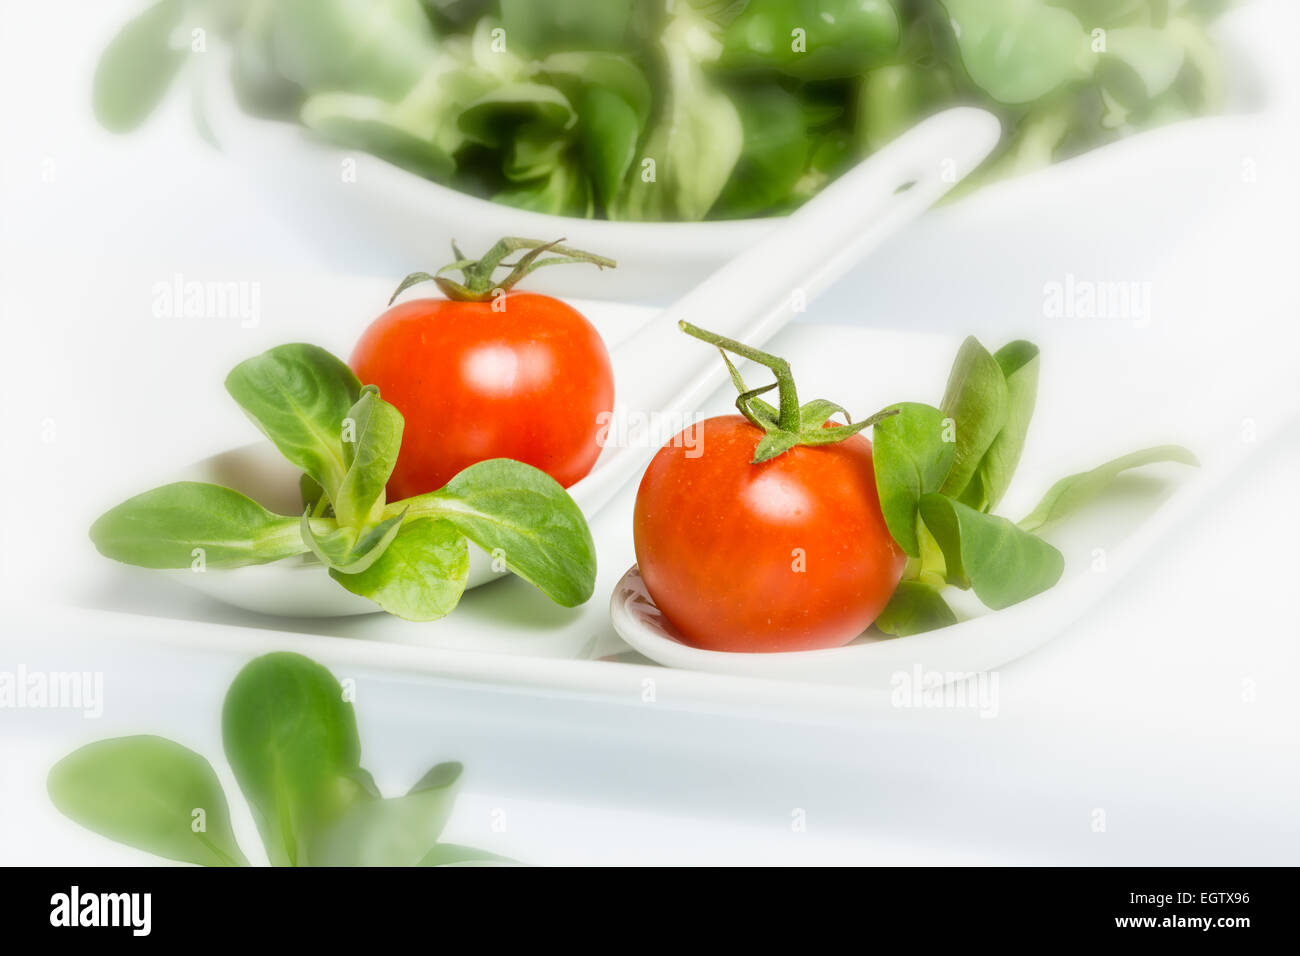 Valerianella locusta, salade de maïs, tomate cerise, mâche sur fond blanc Banque D'Images